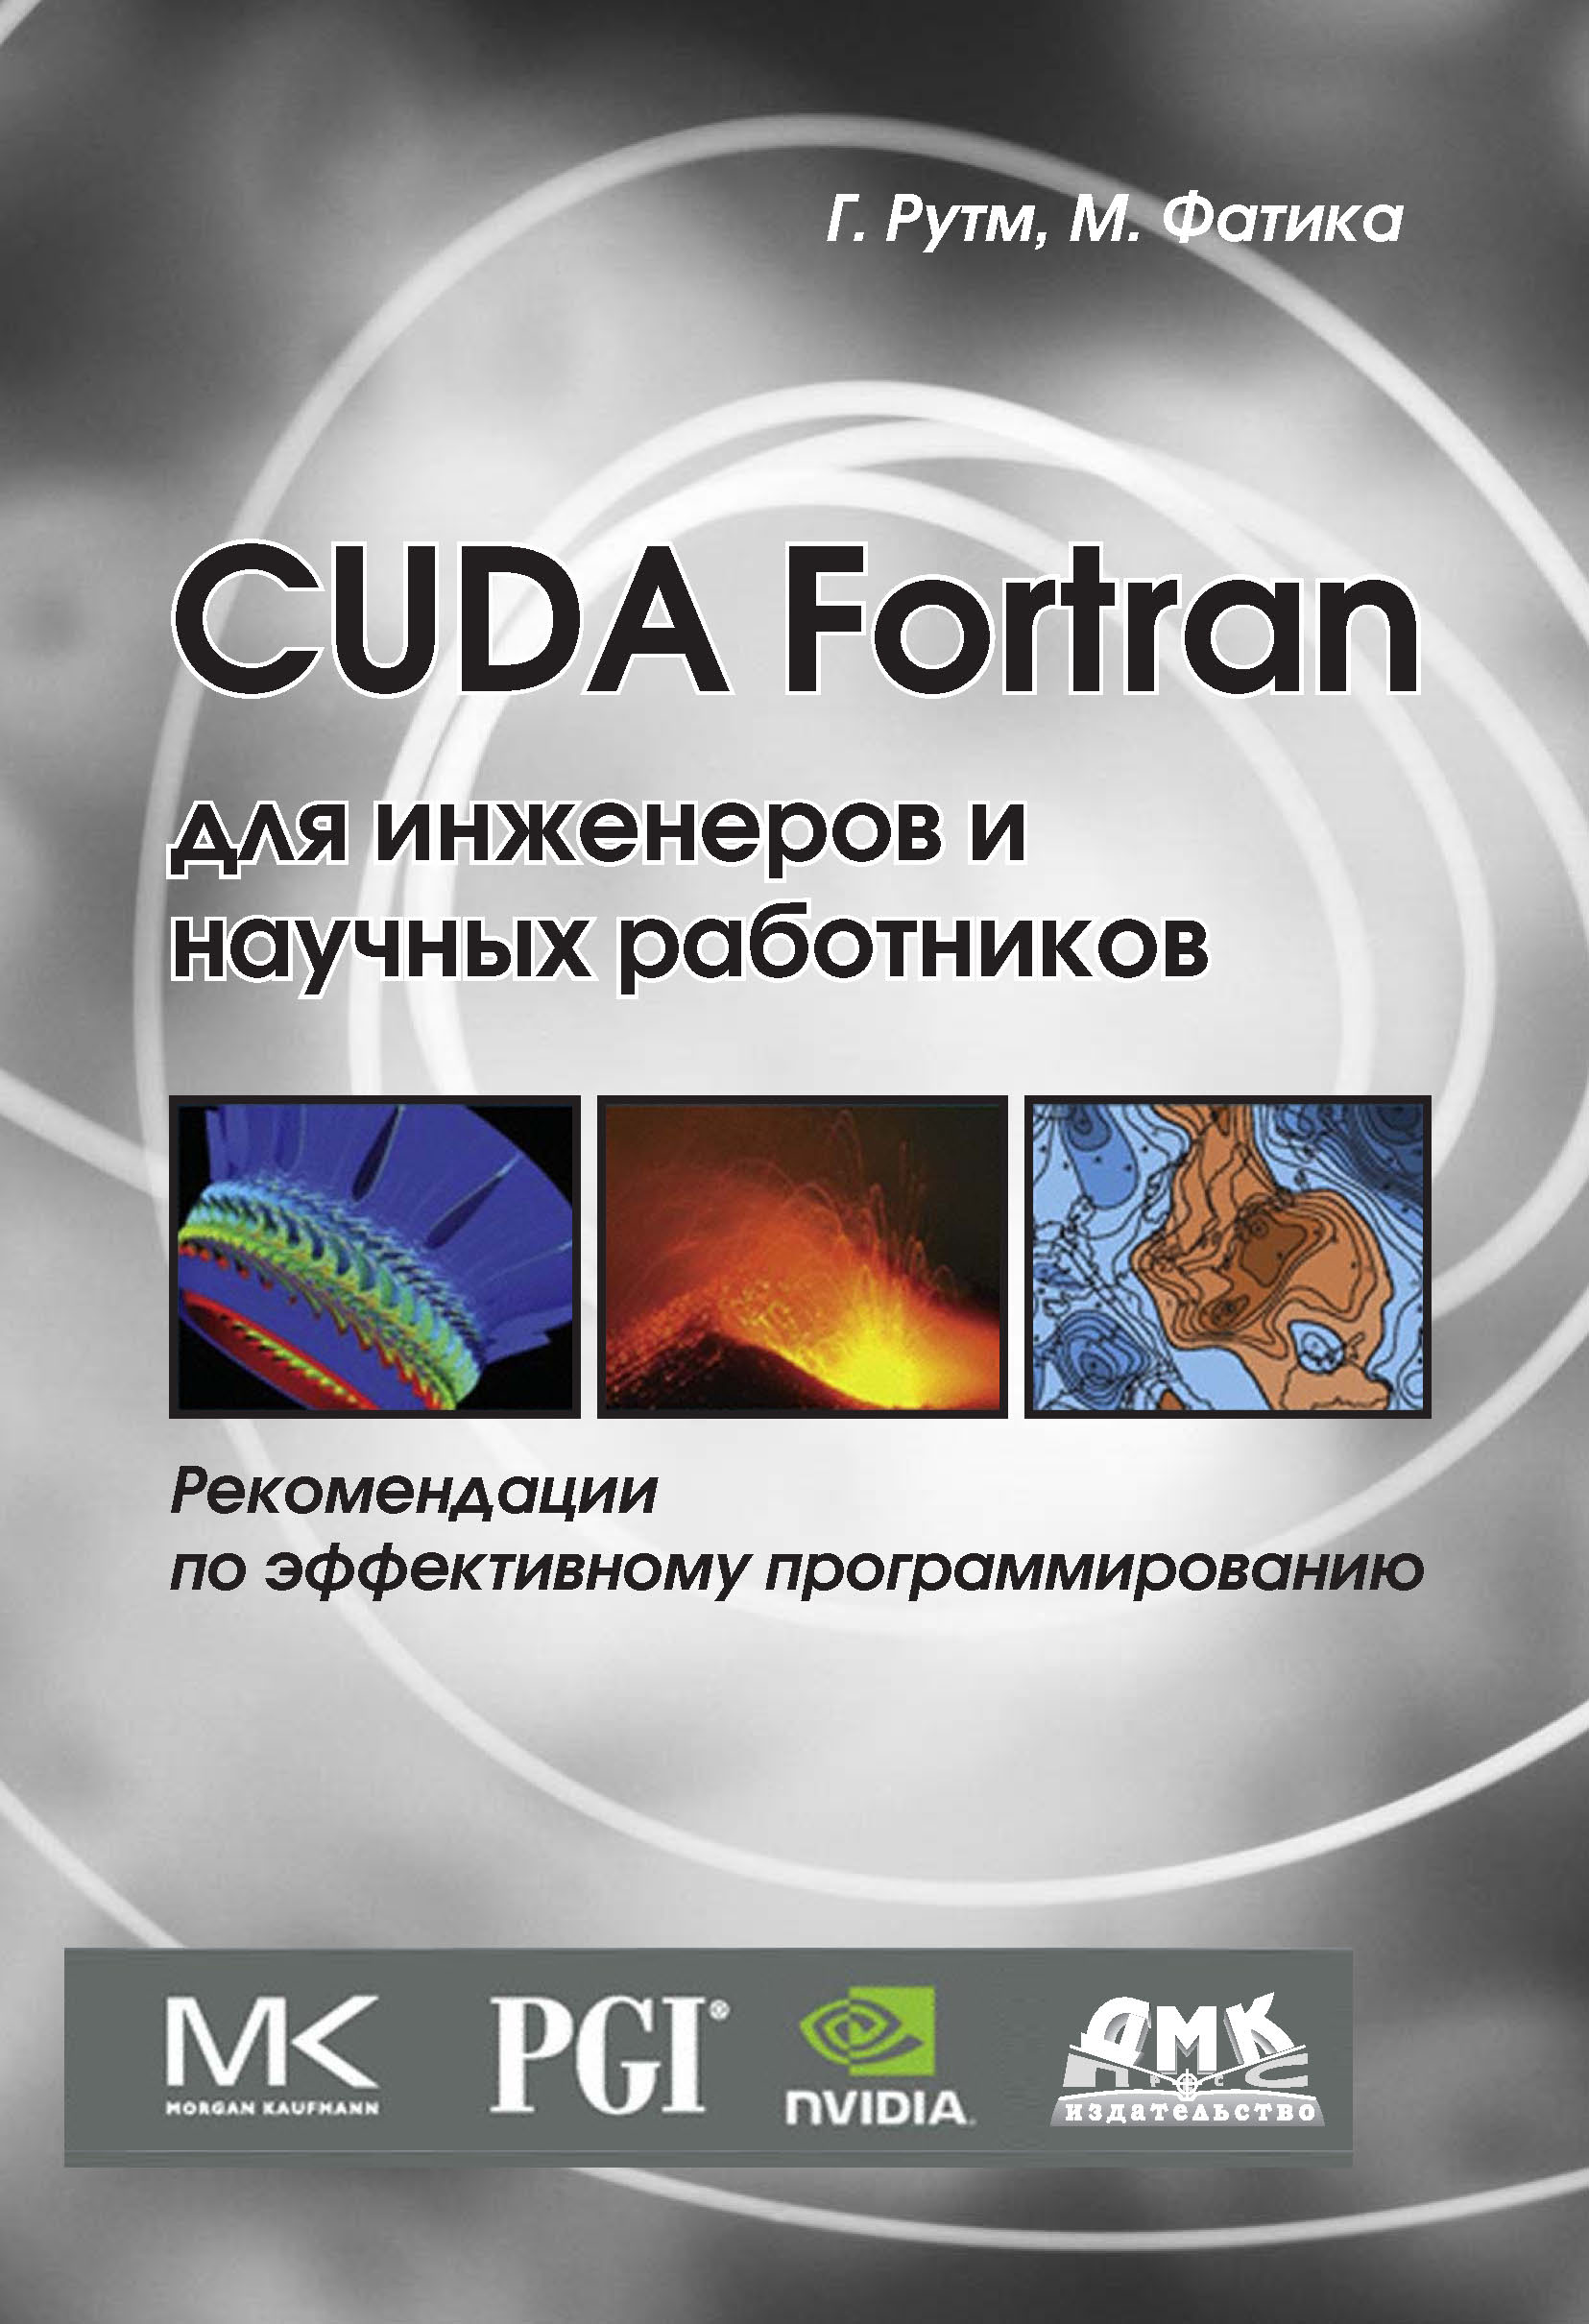 Книга  CUDA Fortran для инженеров и научных работников. Рекомендации по эффективному программированию на языке CUDA Fortran созданная Массимилиано Фатика, Грегори Рутш, А. А. Слинкин может относится к жанру зарубежная компьютерная литература, программирование. Стоимость электронной книги CUDA Fortran для инженеров и научных работников. Рекомендации по эффективному программированию на языке CUDA Fortran с идентификатором 9998556 составляет 479.00 руб.